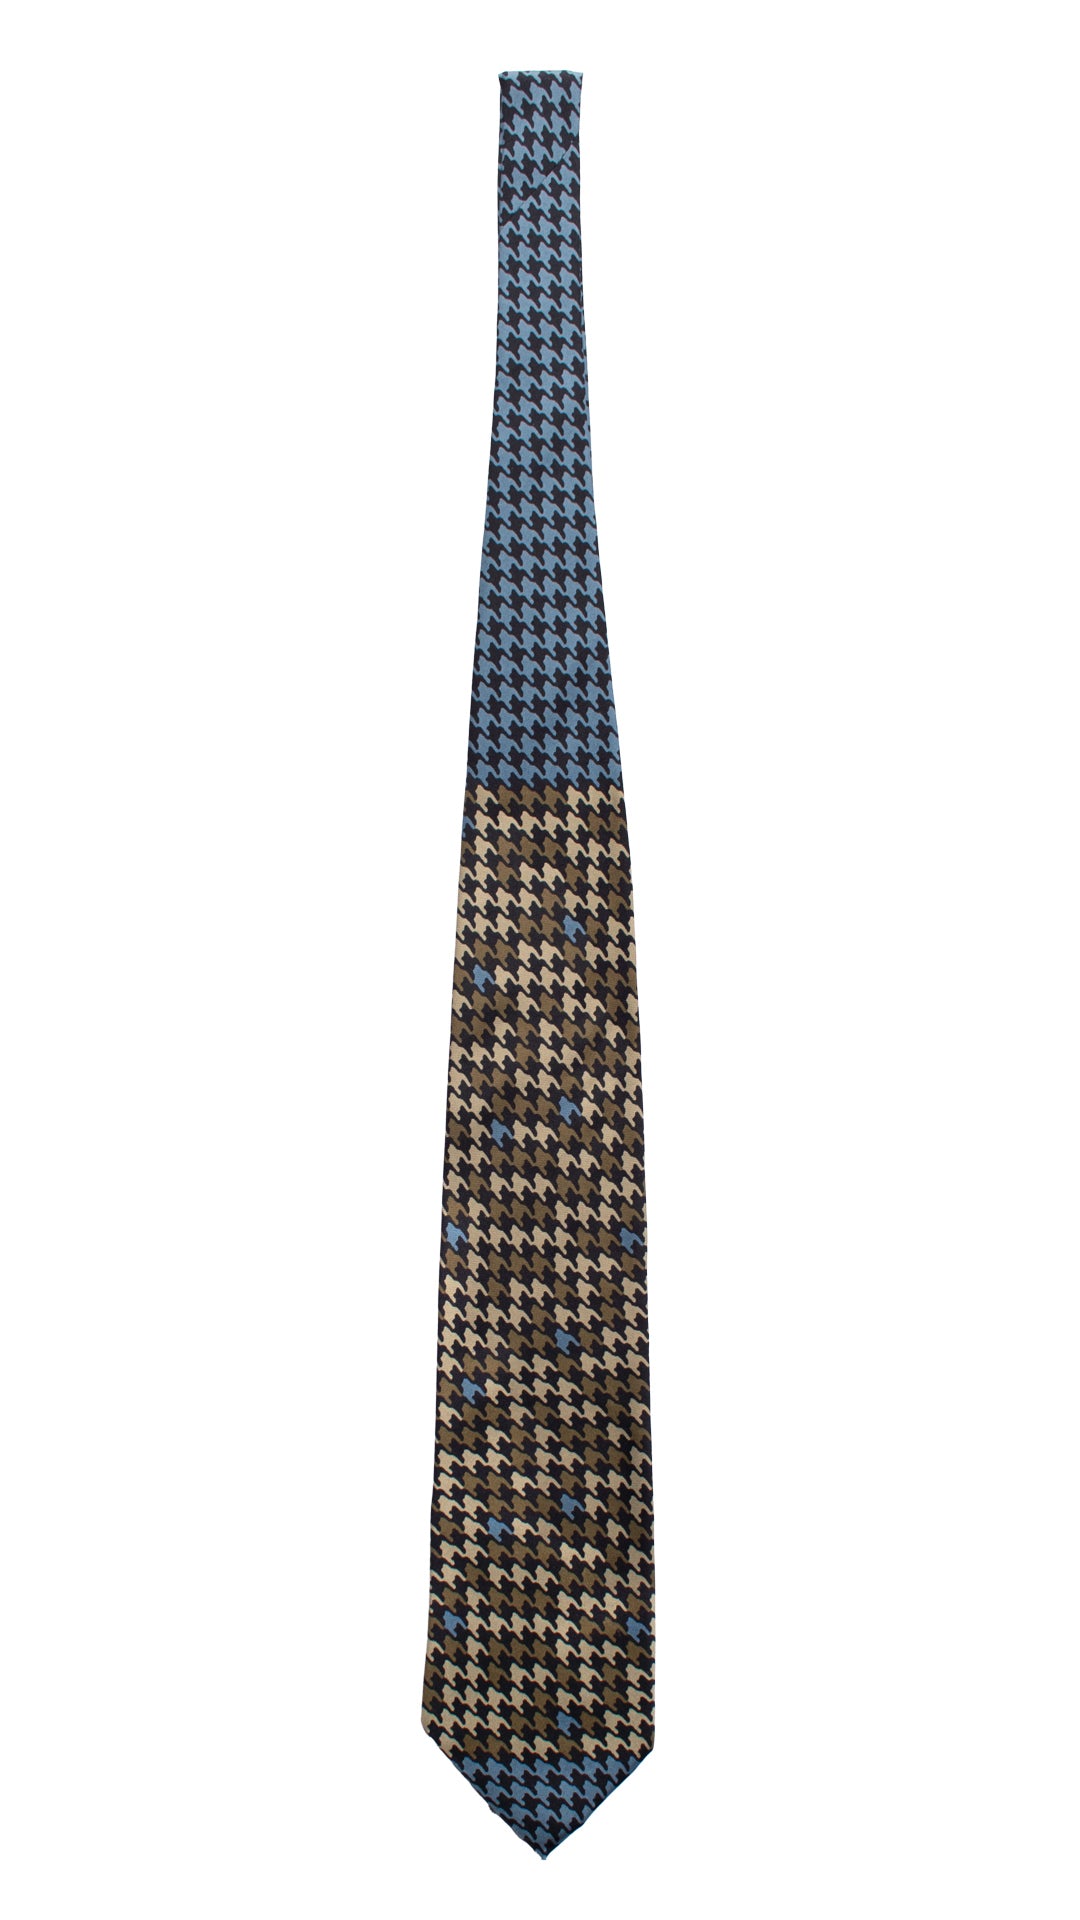 Cravatta Vintage in Twill di Seta Nera Pied de Poule Multicolor Nodo in Contrasto CV822 Intera